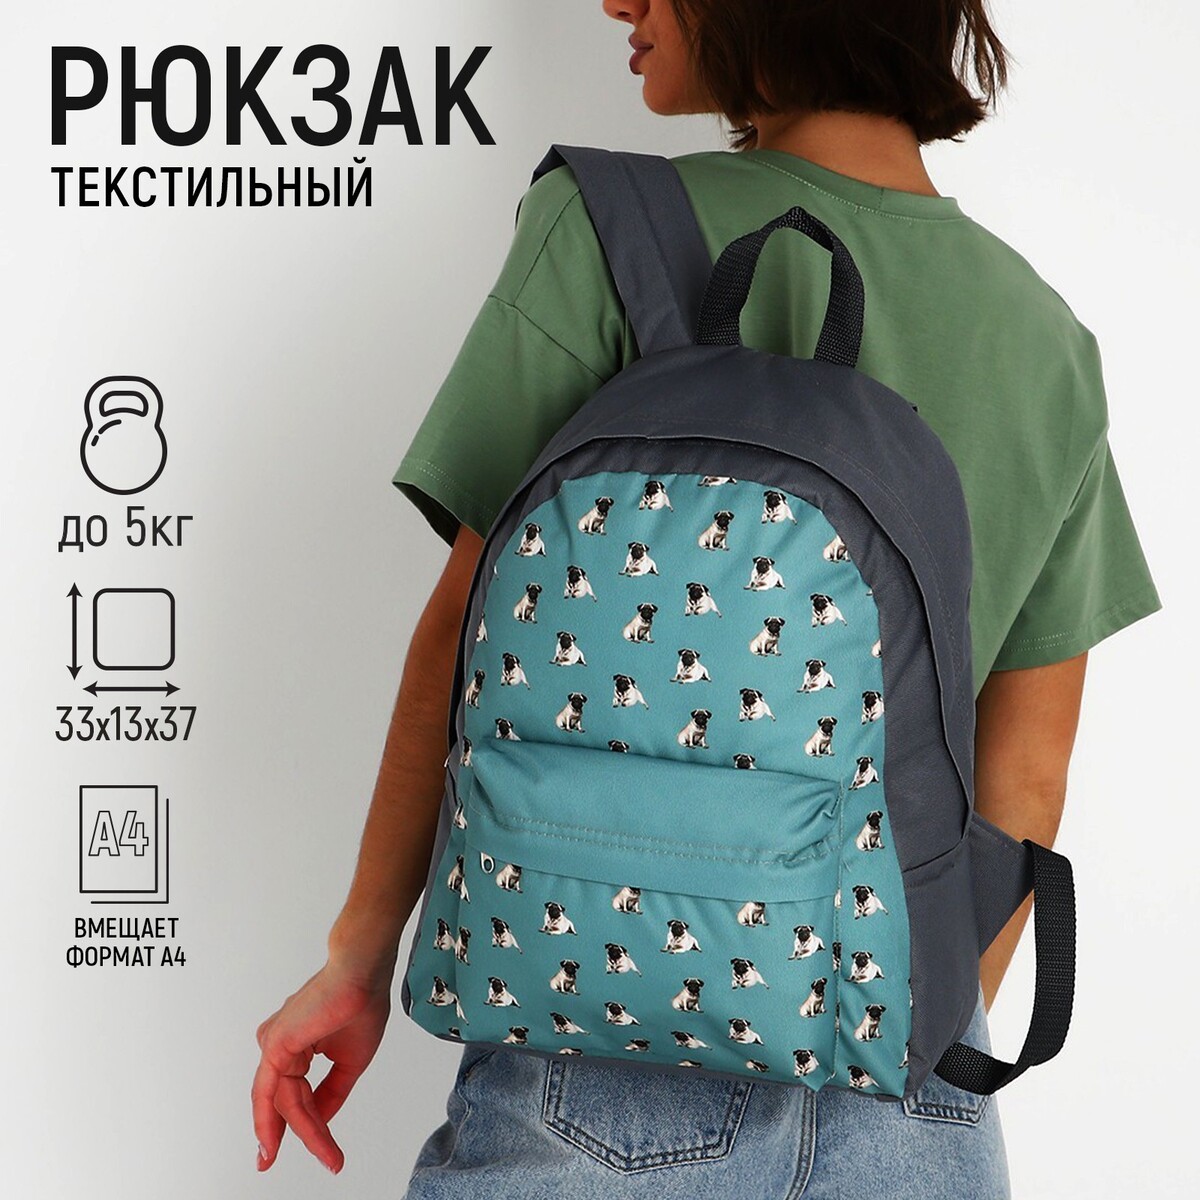 Рюкзак текстильный мопсы, с карманом, цвет серый рюкзак текстильный с ным карманом 30х39х12 см бордовый